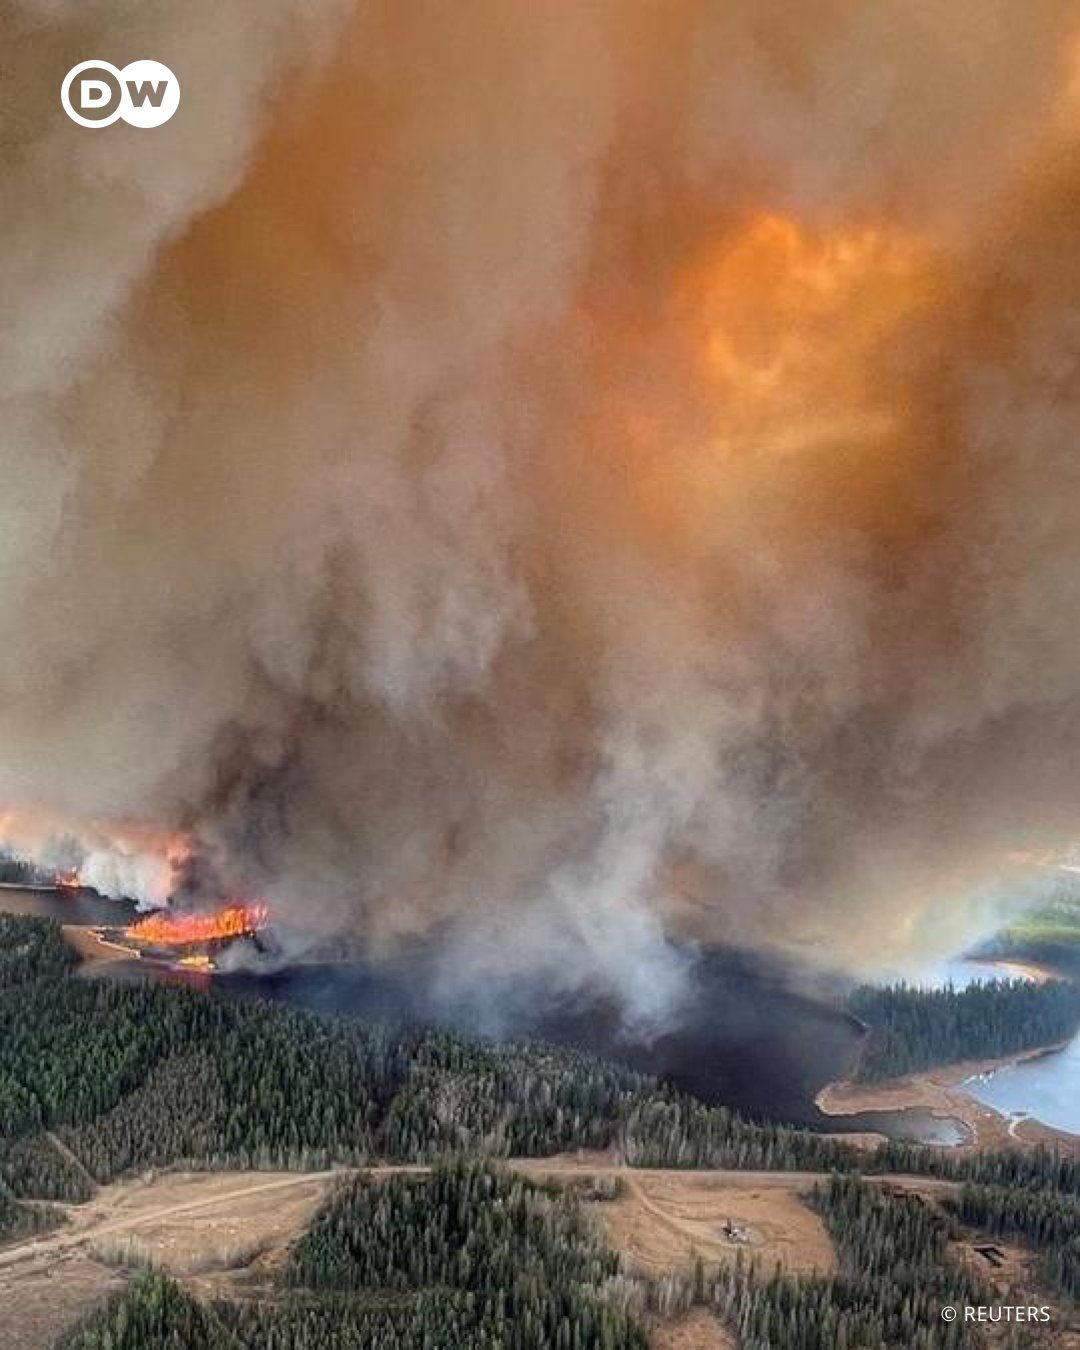 “Riesgo muy elevado” en la calidad del aire ante los más de 400 incendios forestales en Canadá